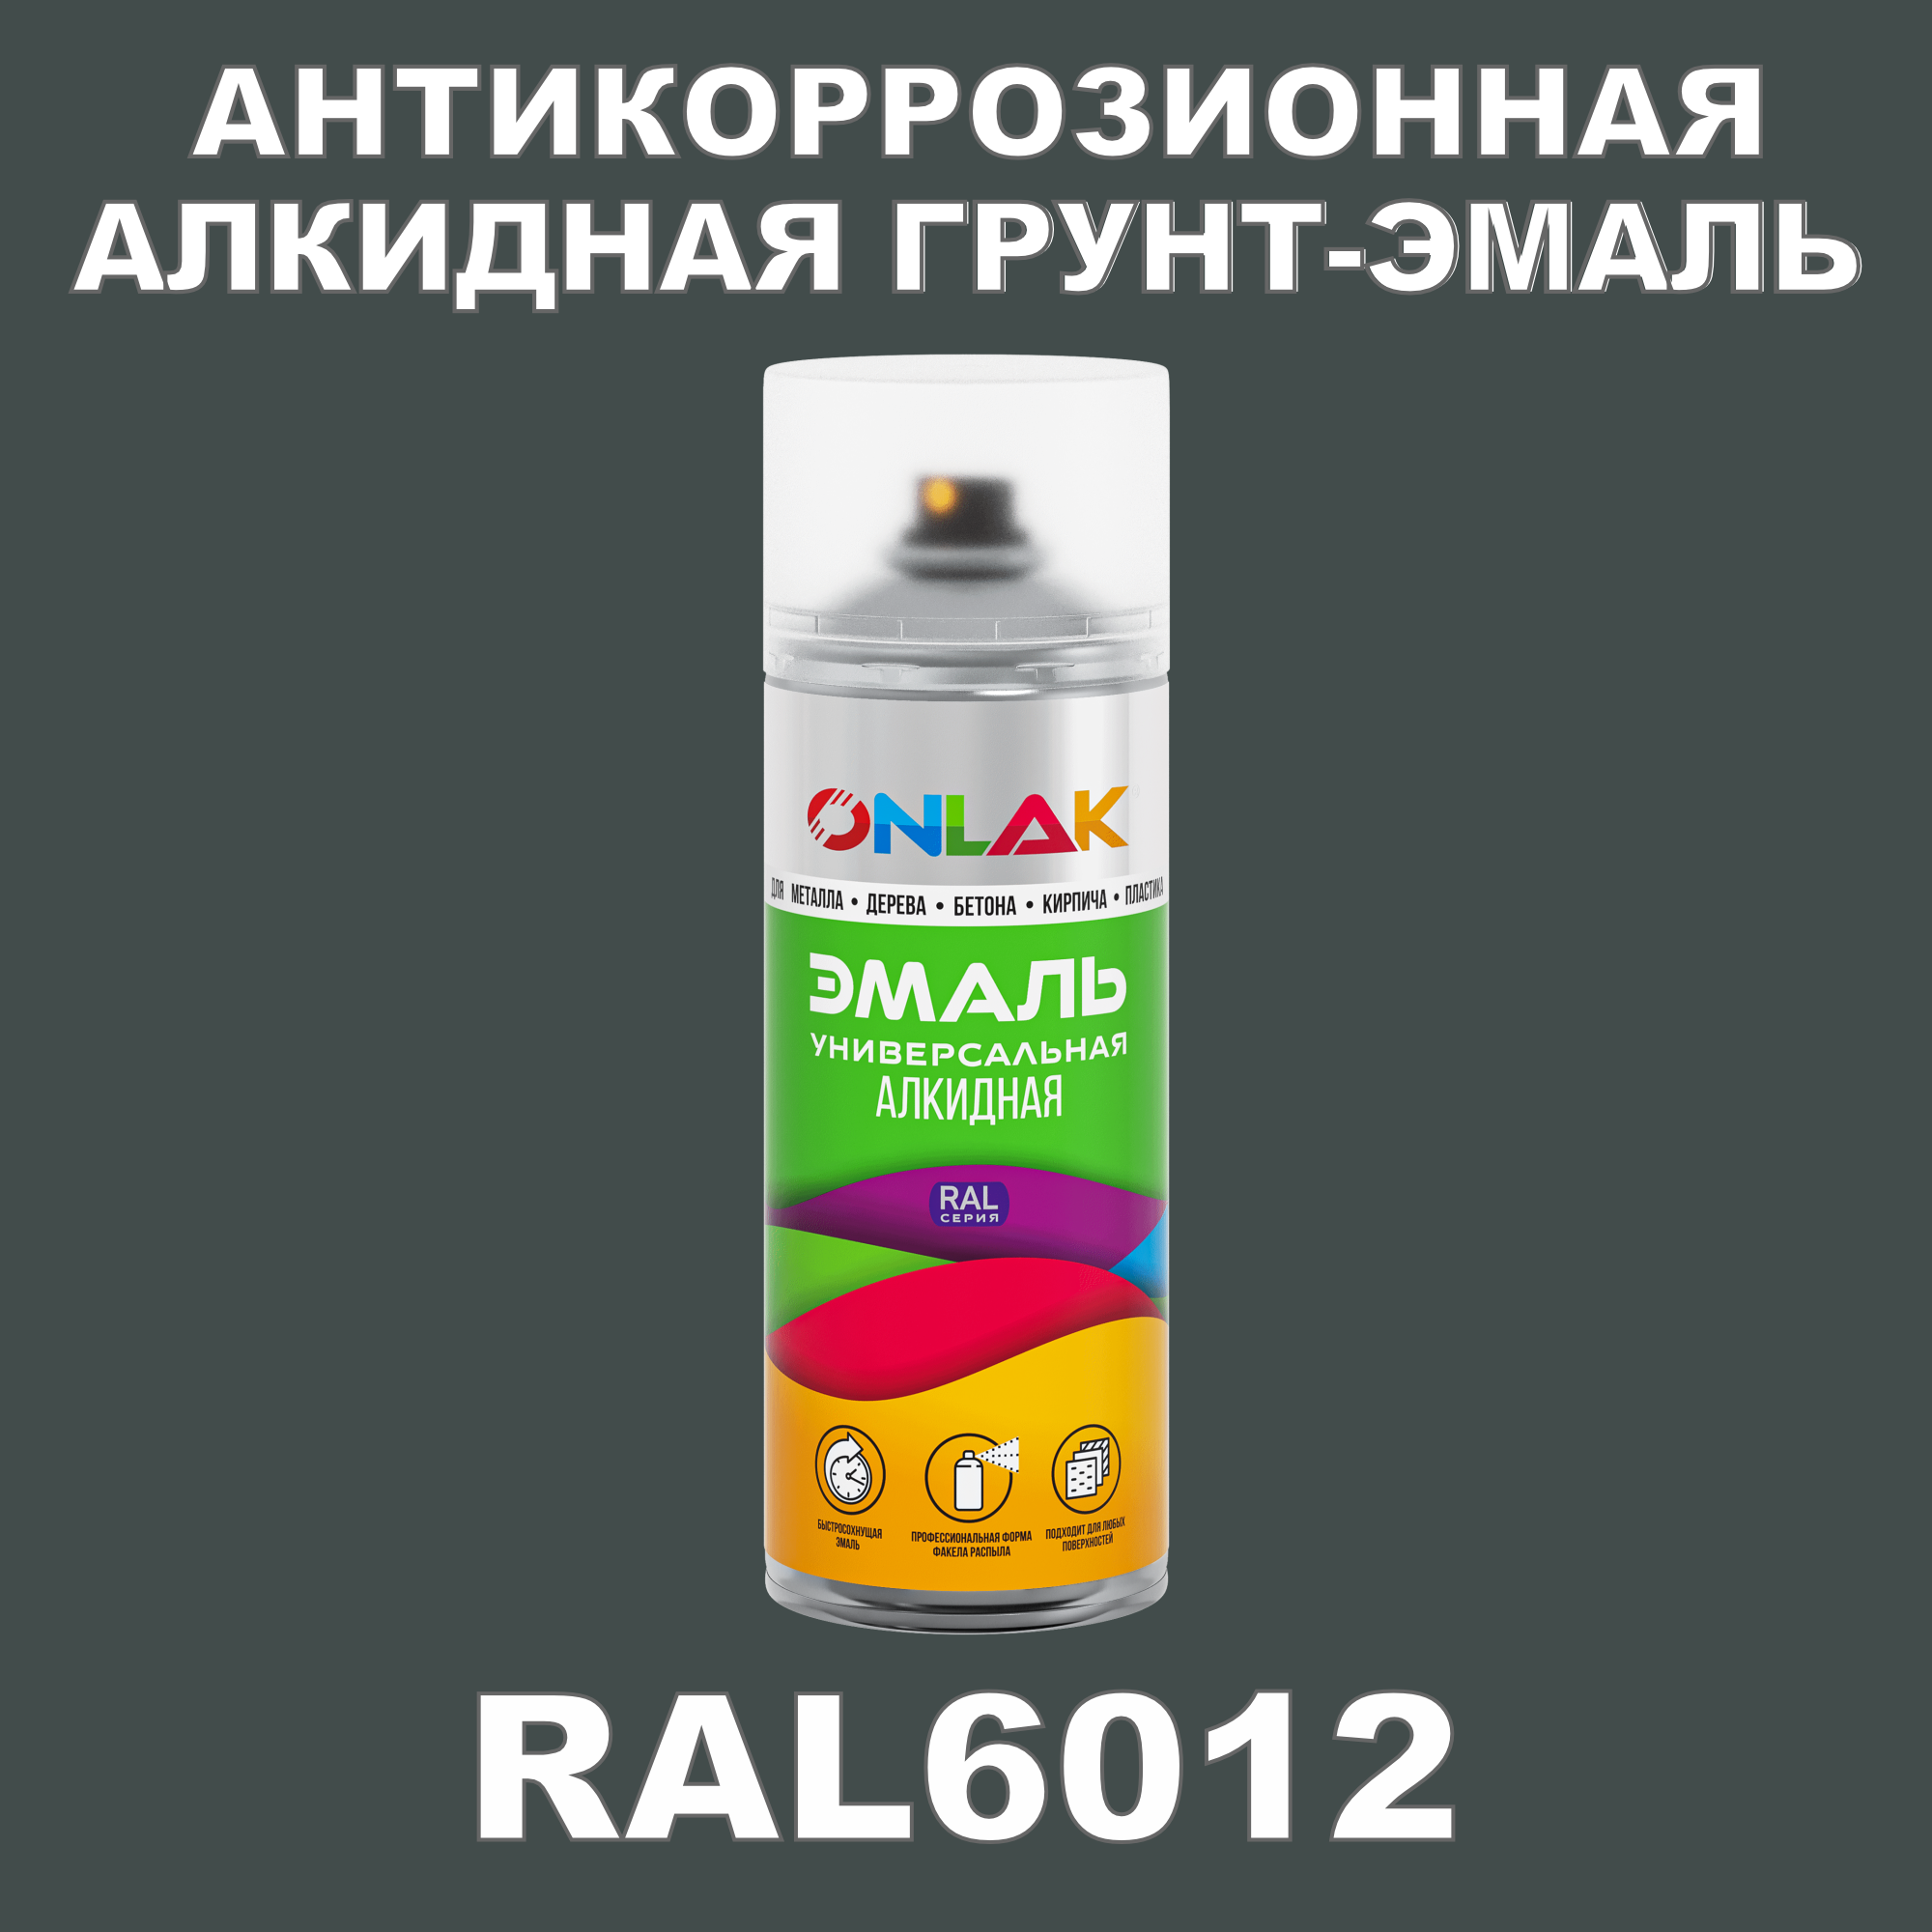 Антикоррозионная грунт-эмаль ONLAK RAL6012 полуматовая для металла и защиты от ржавчины